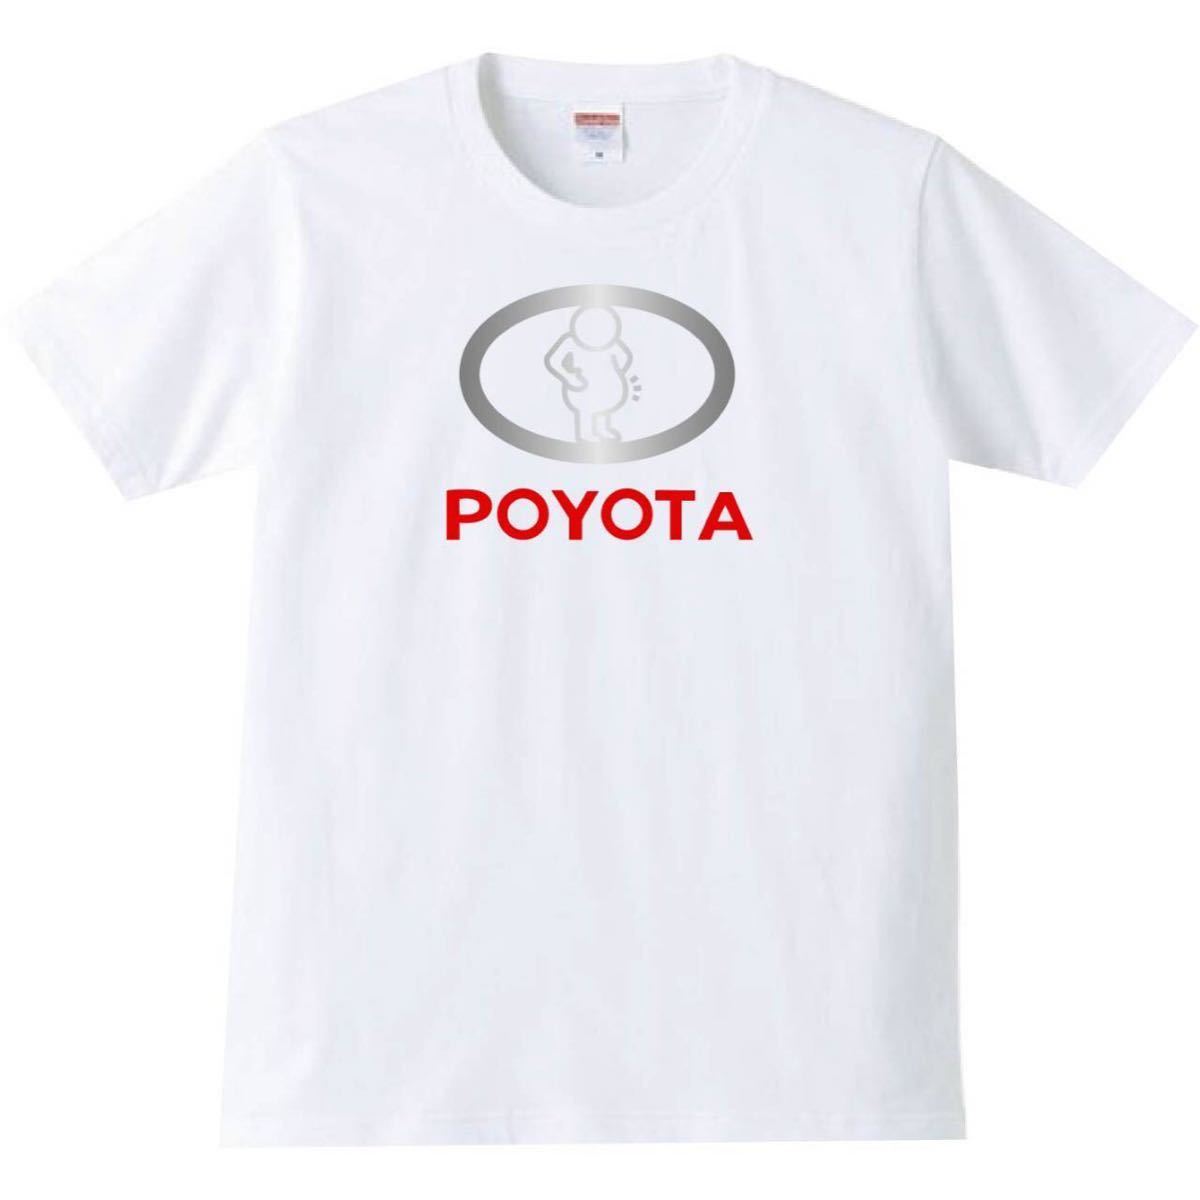 【送料無料】【新品】POYOTA ポヨタ Tシャツ パロディ おもしろ プレゼント メンズ 白 XLサイズ_画像1